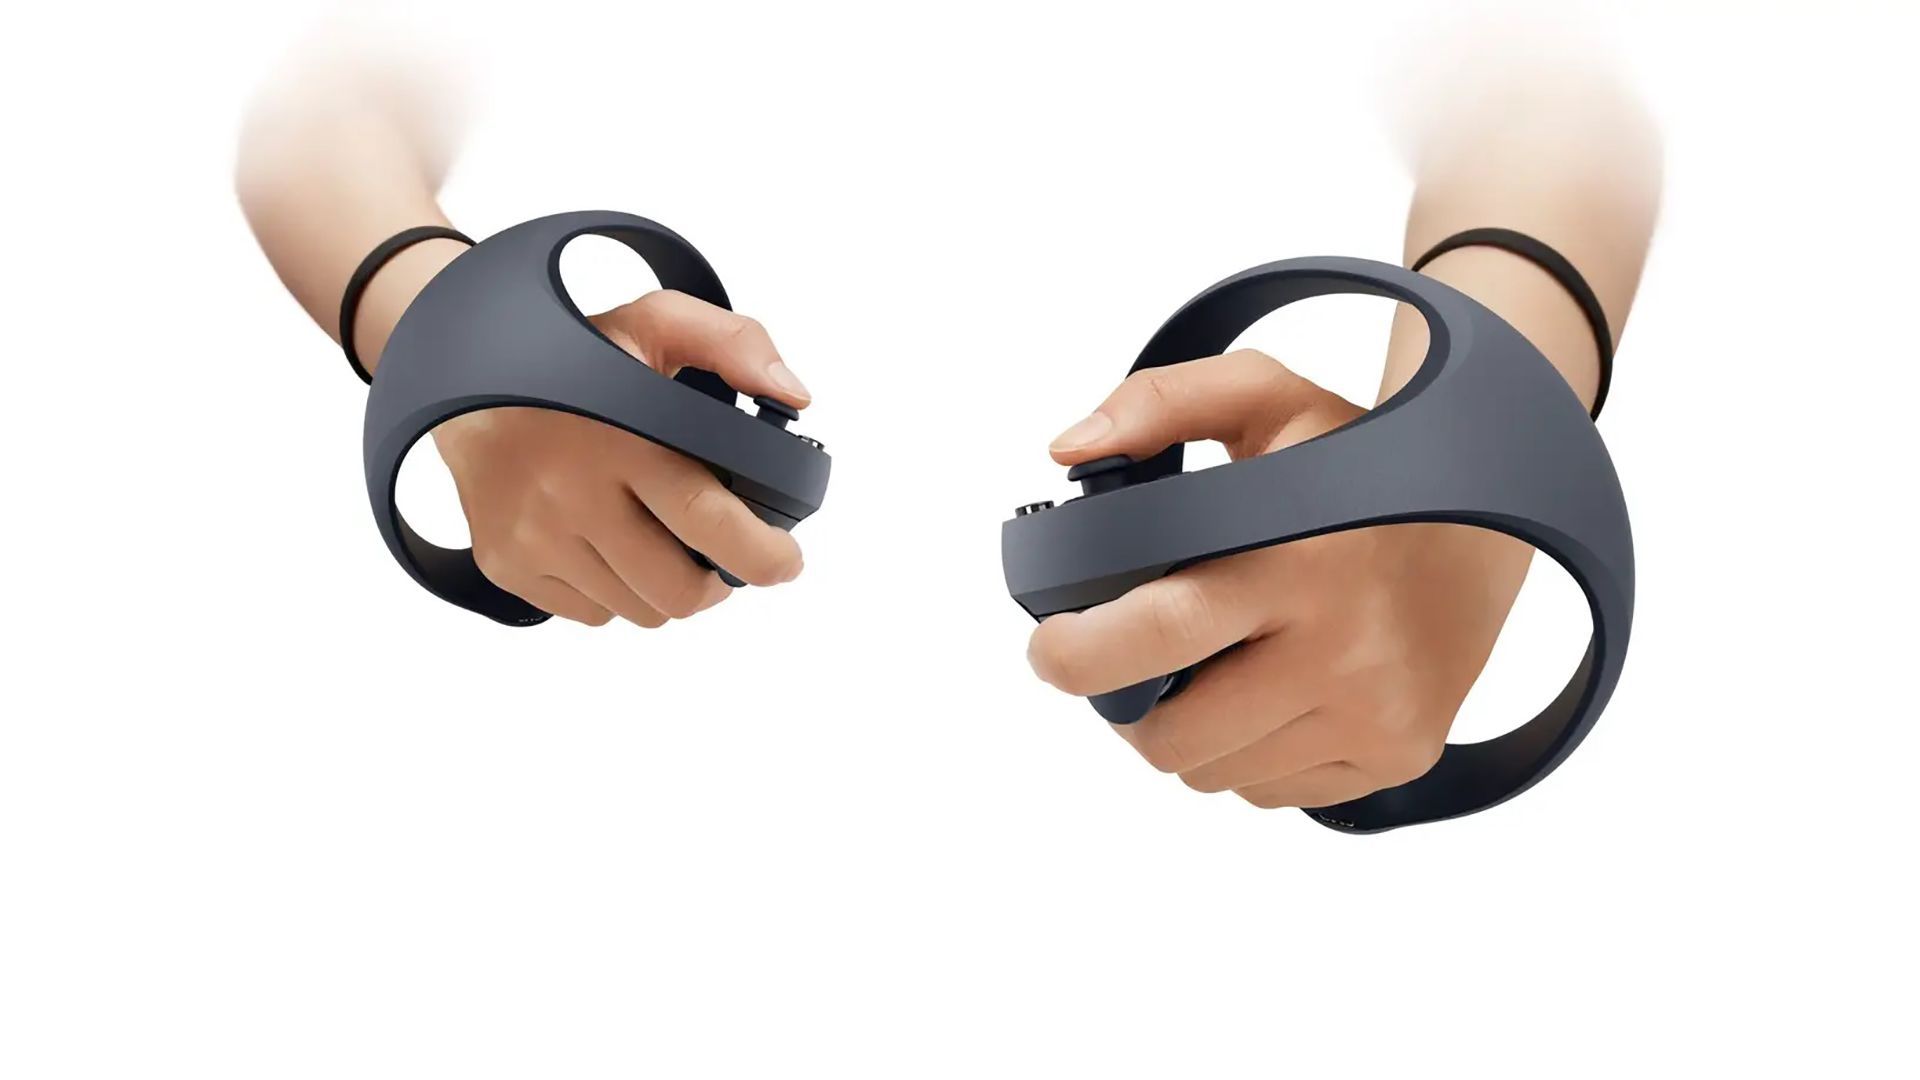 Découvrez les nouveautés du PlayStation VR2